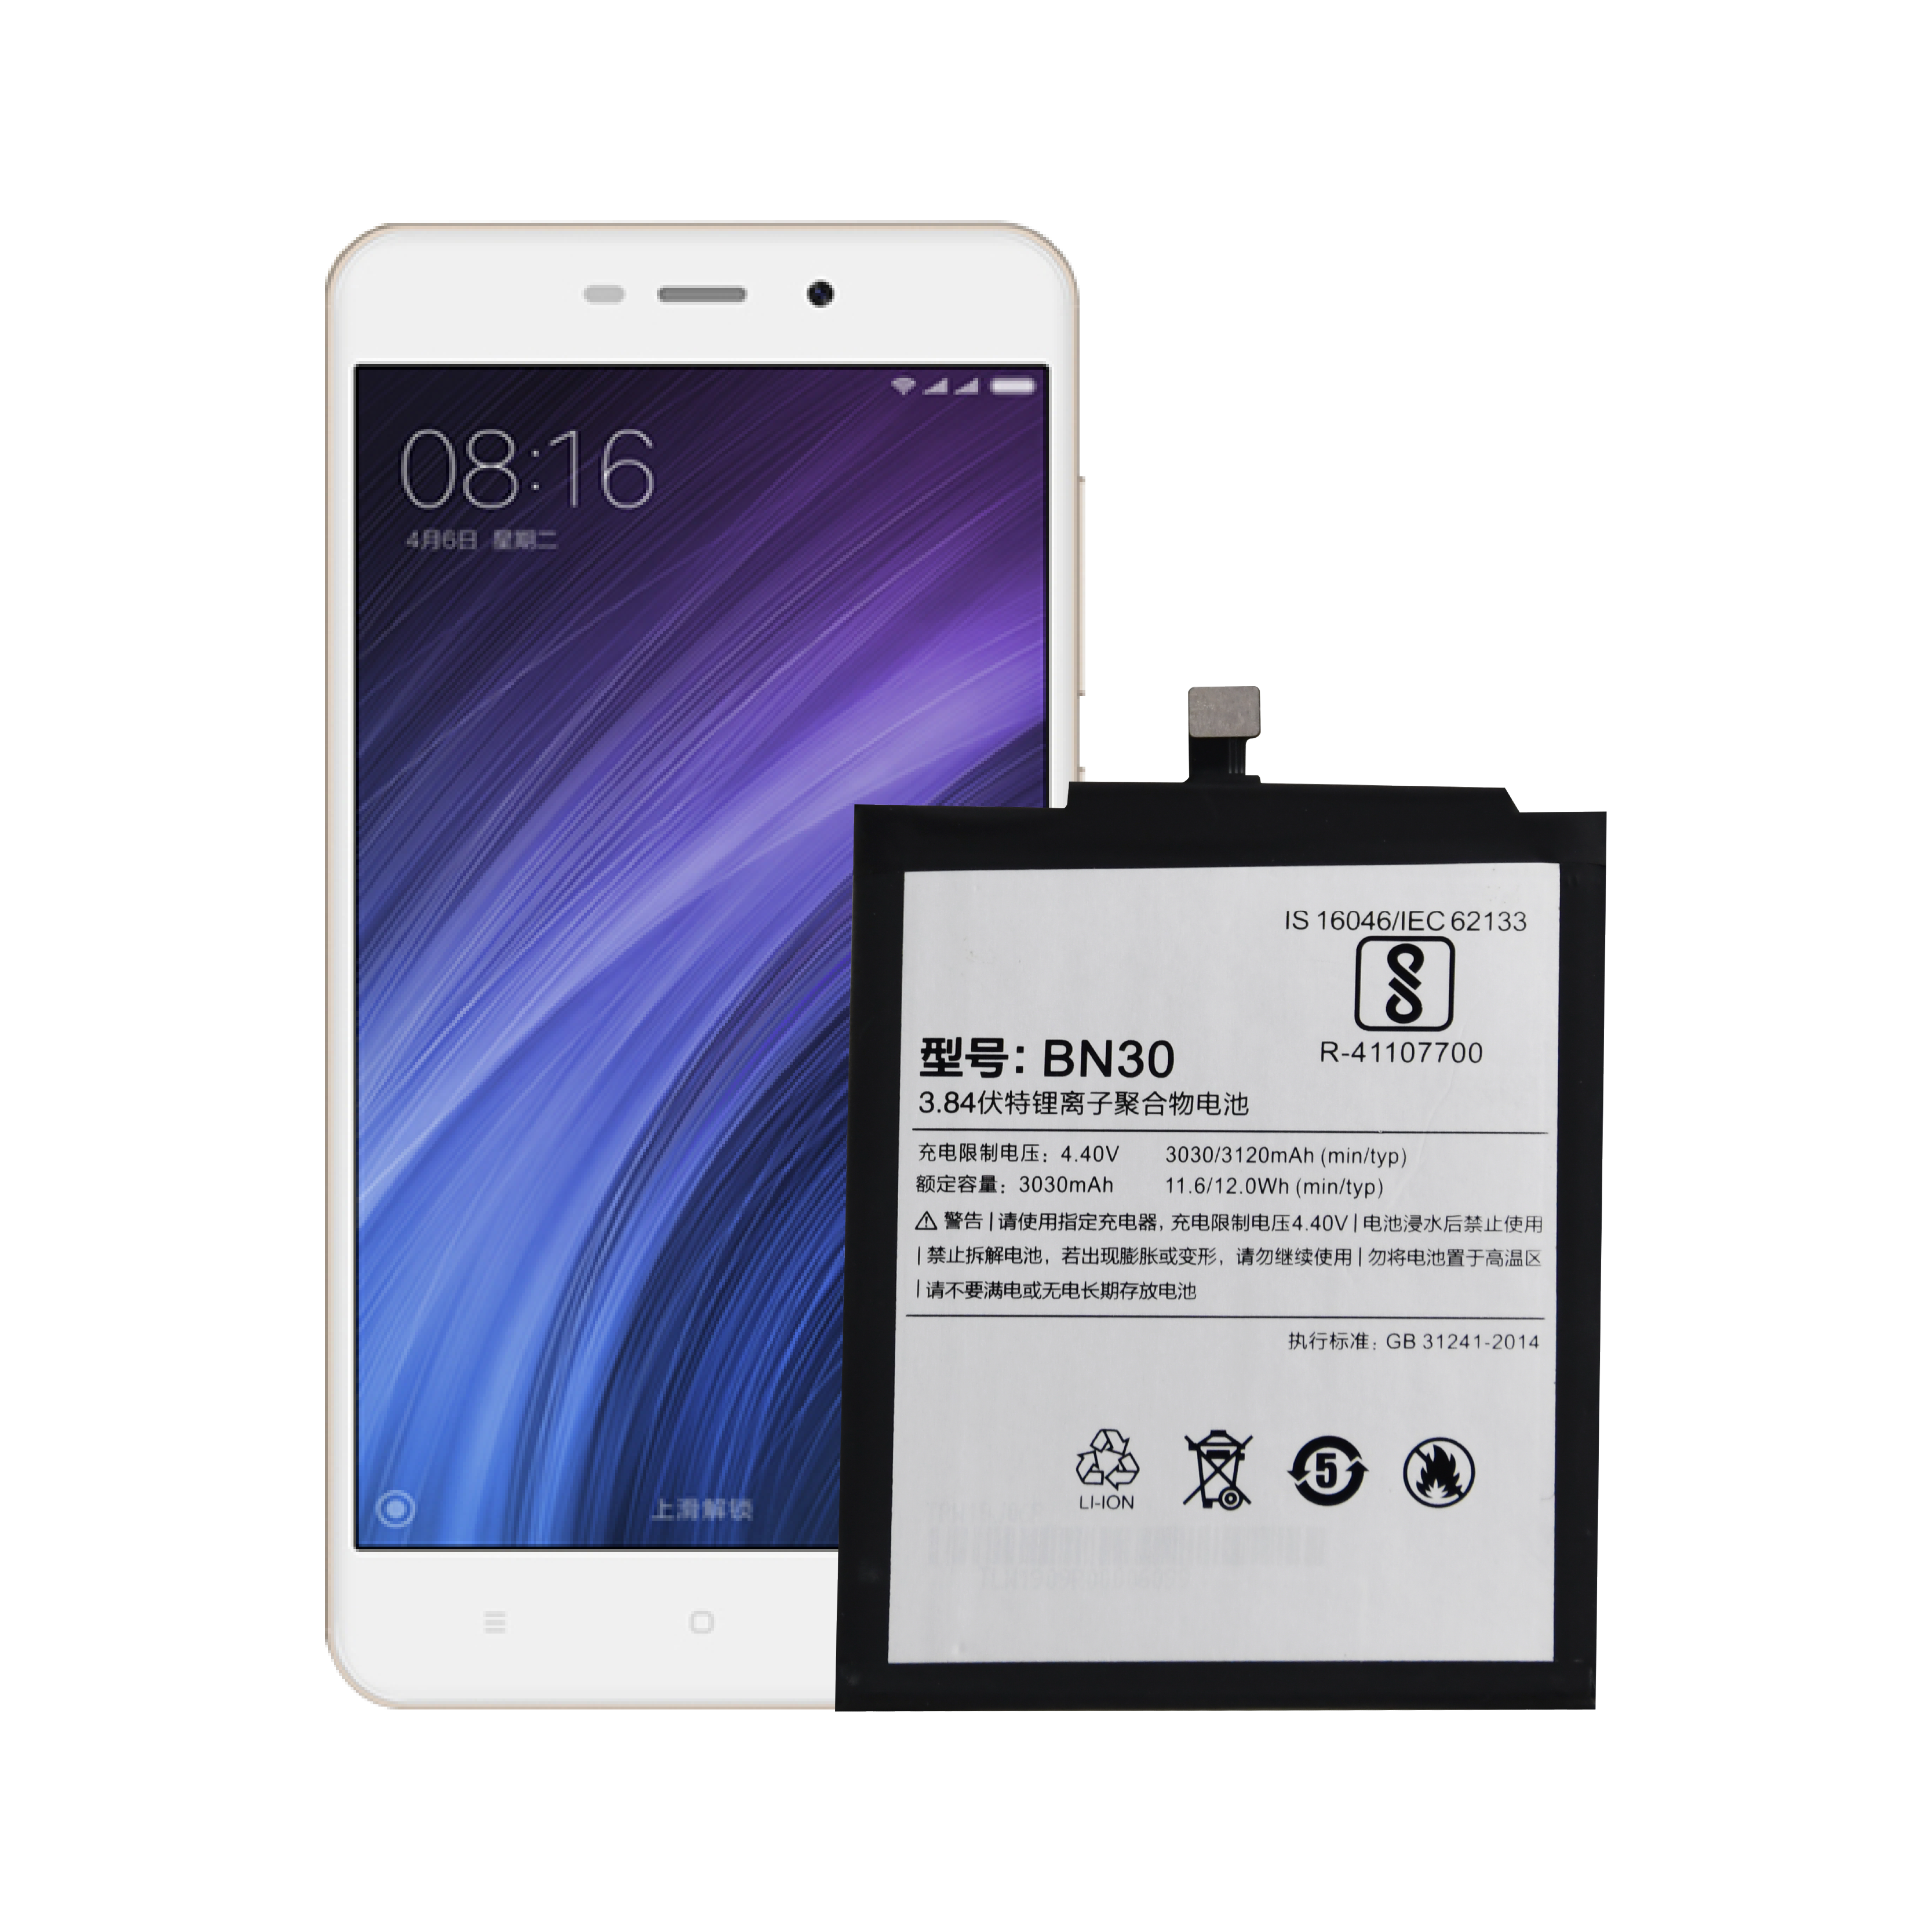 OEM de alta qualidade disponível nova bateria de substituição de telefone celular para bateria Hongmi 4A